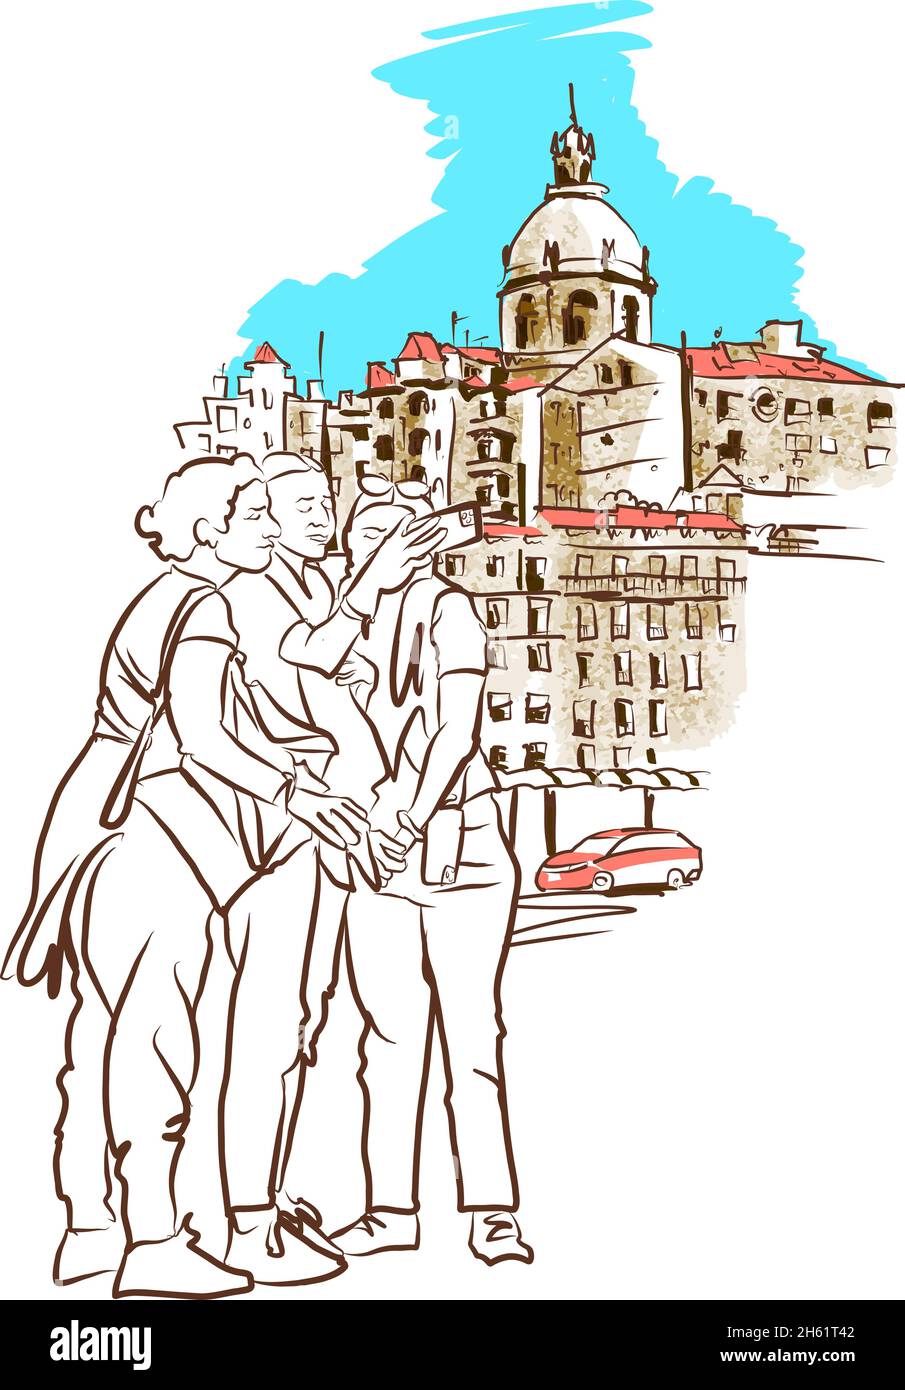 Lisbona, Portogallo Travel sketch. Antico panorama di Lisbona, Portogallo. Disegno vettoriale del paesaggio urbano in stile di schizzo disegnato a mano. Illustrazione Vettoriale